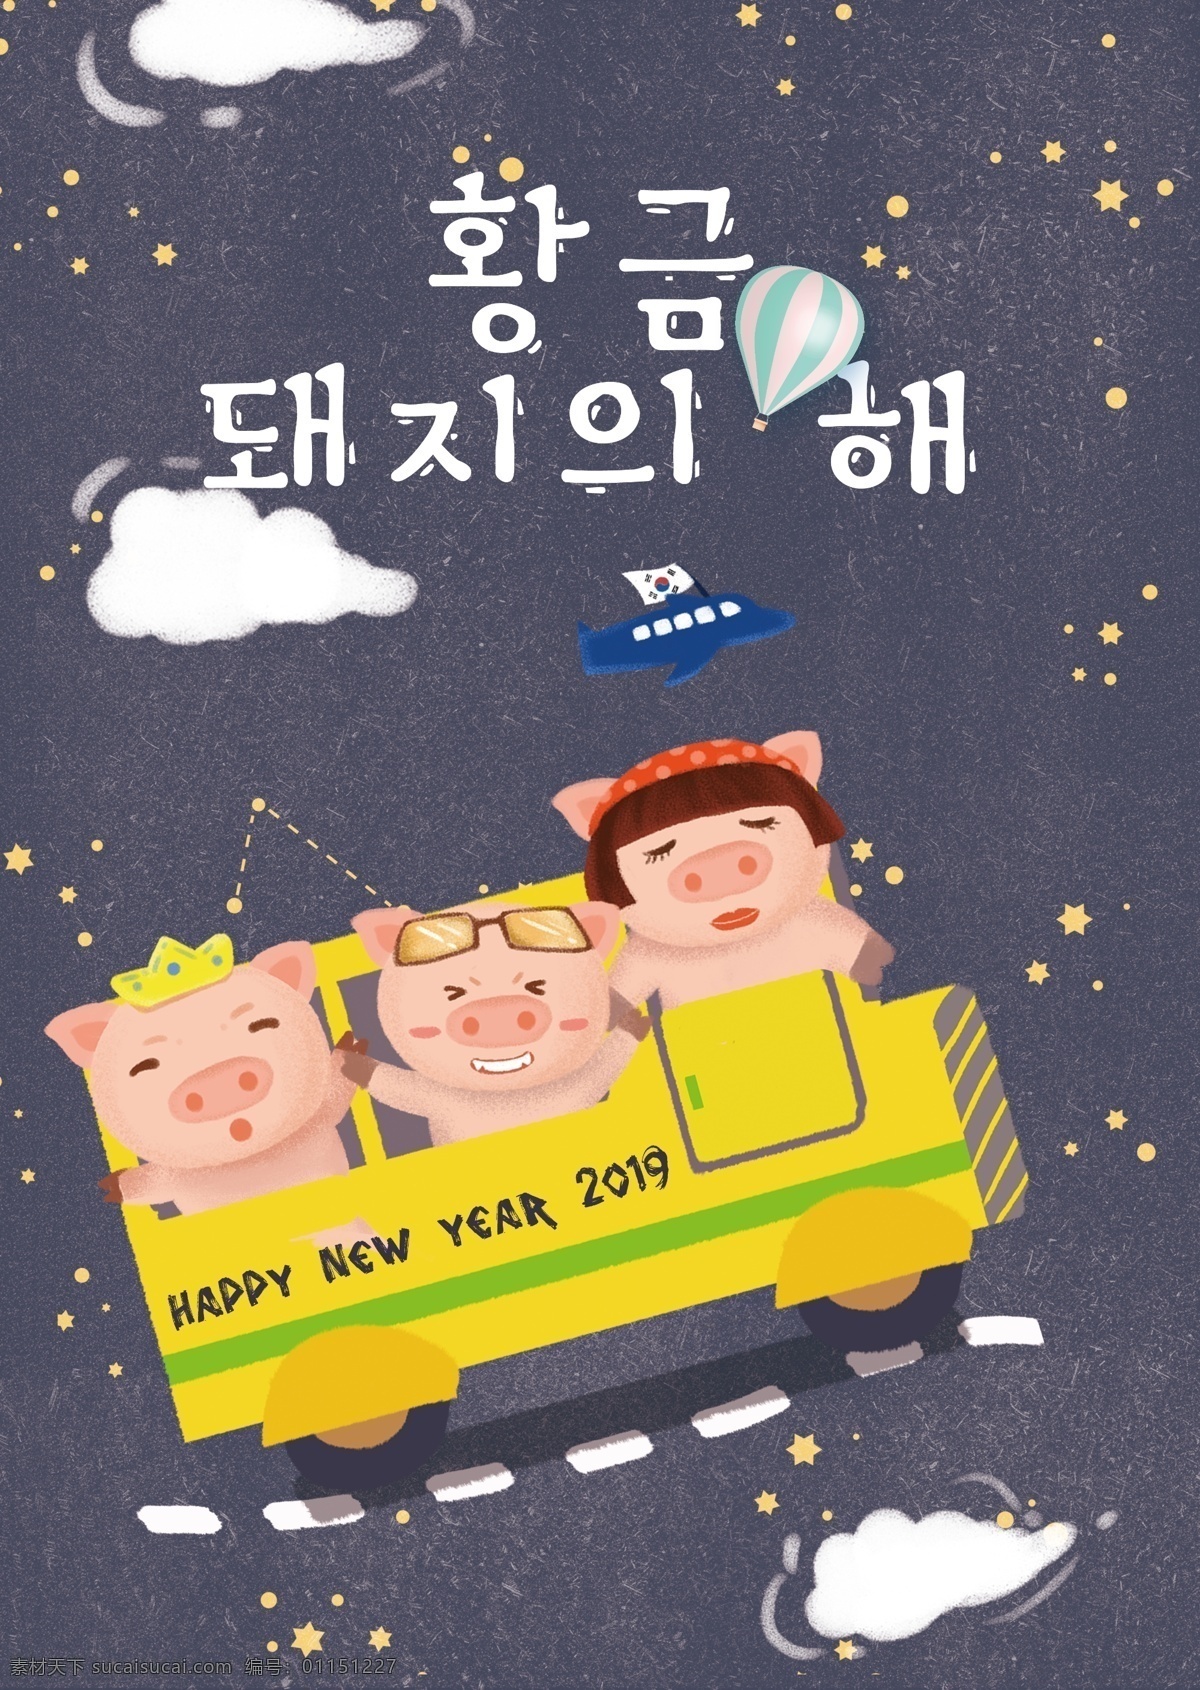 2019 年到 谢 关于 星星 海报 肝脏药物 猪 节 飞机 打开 车 动画片 模板 韩国新的一年 春节 韩国风格 卡通 上 移动 支付 白云 公交车